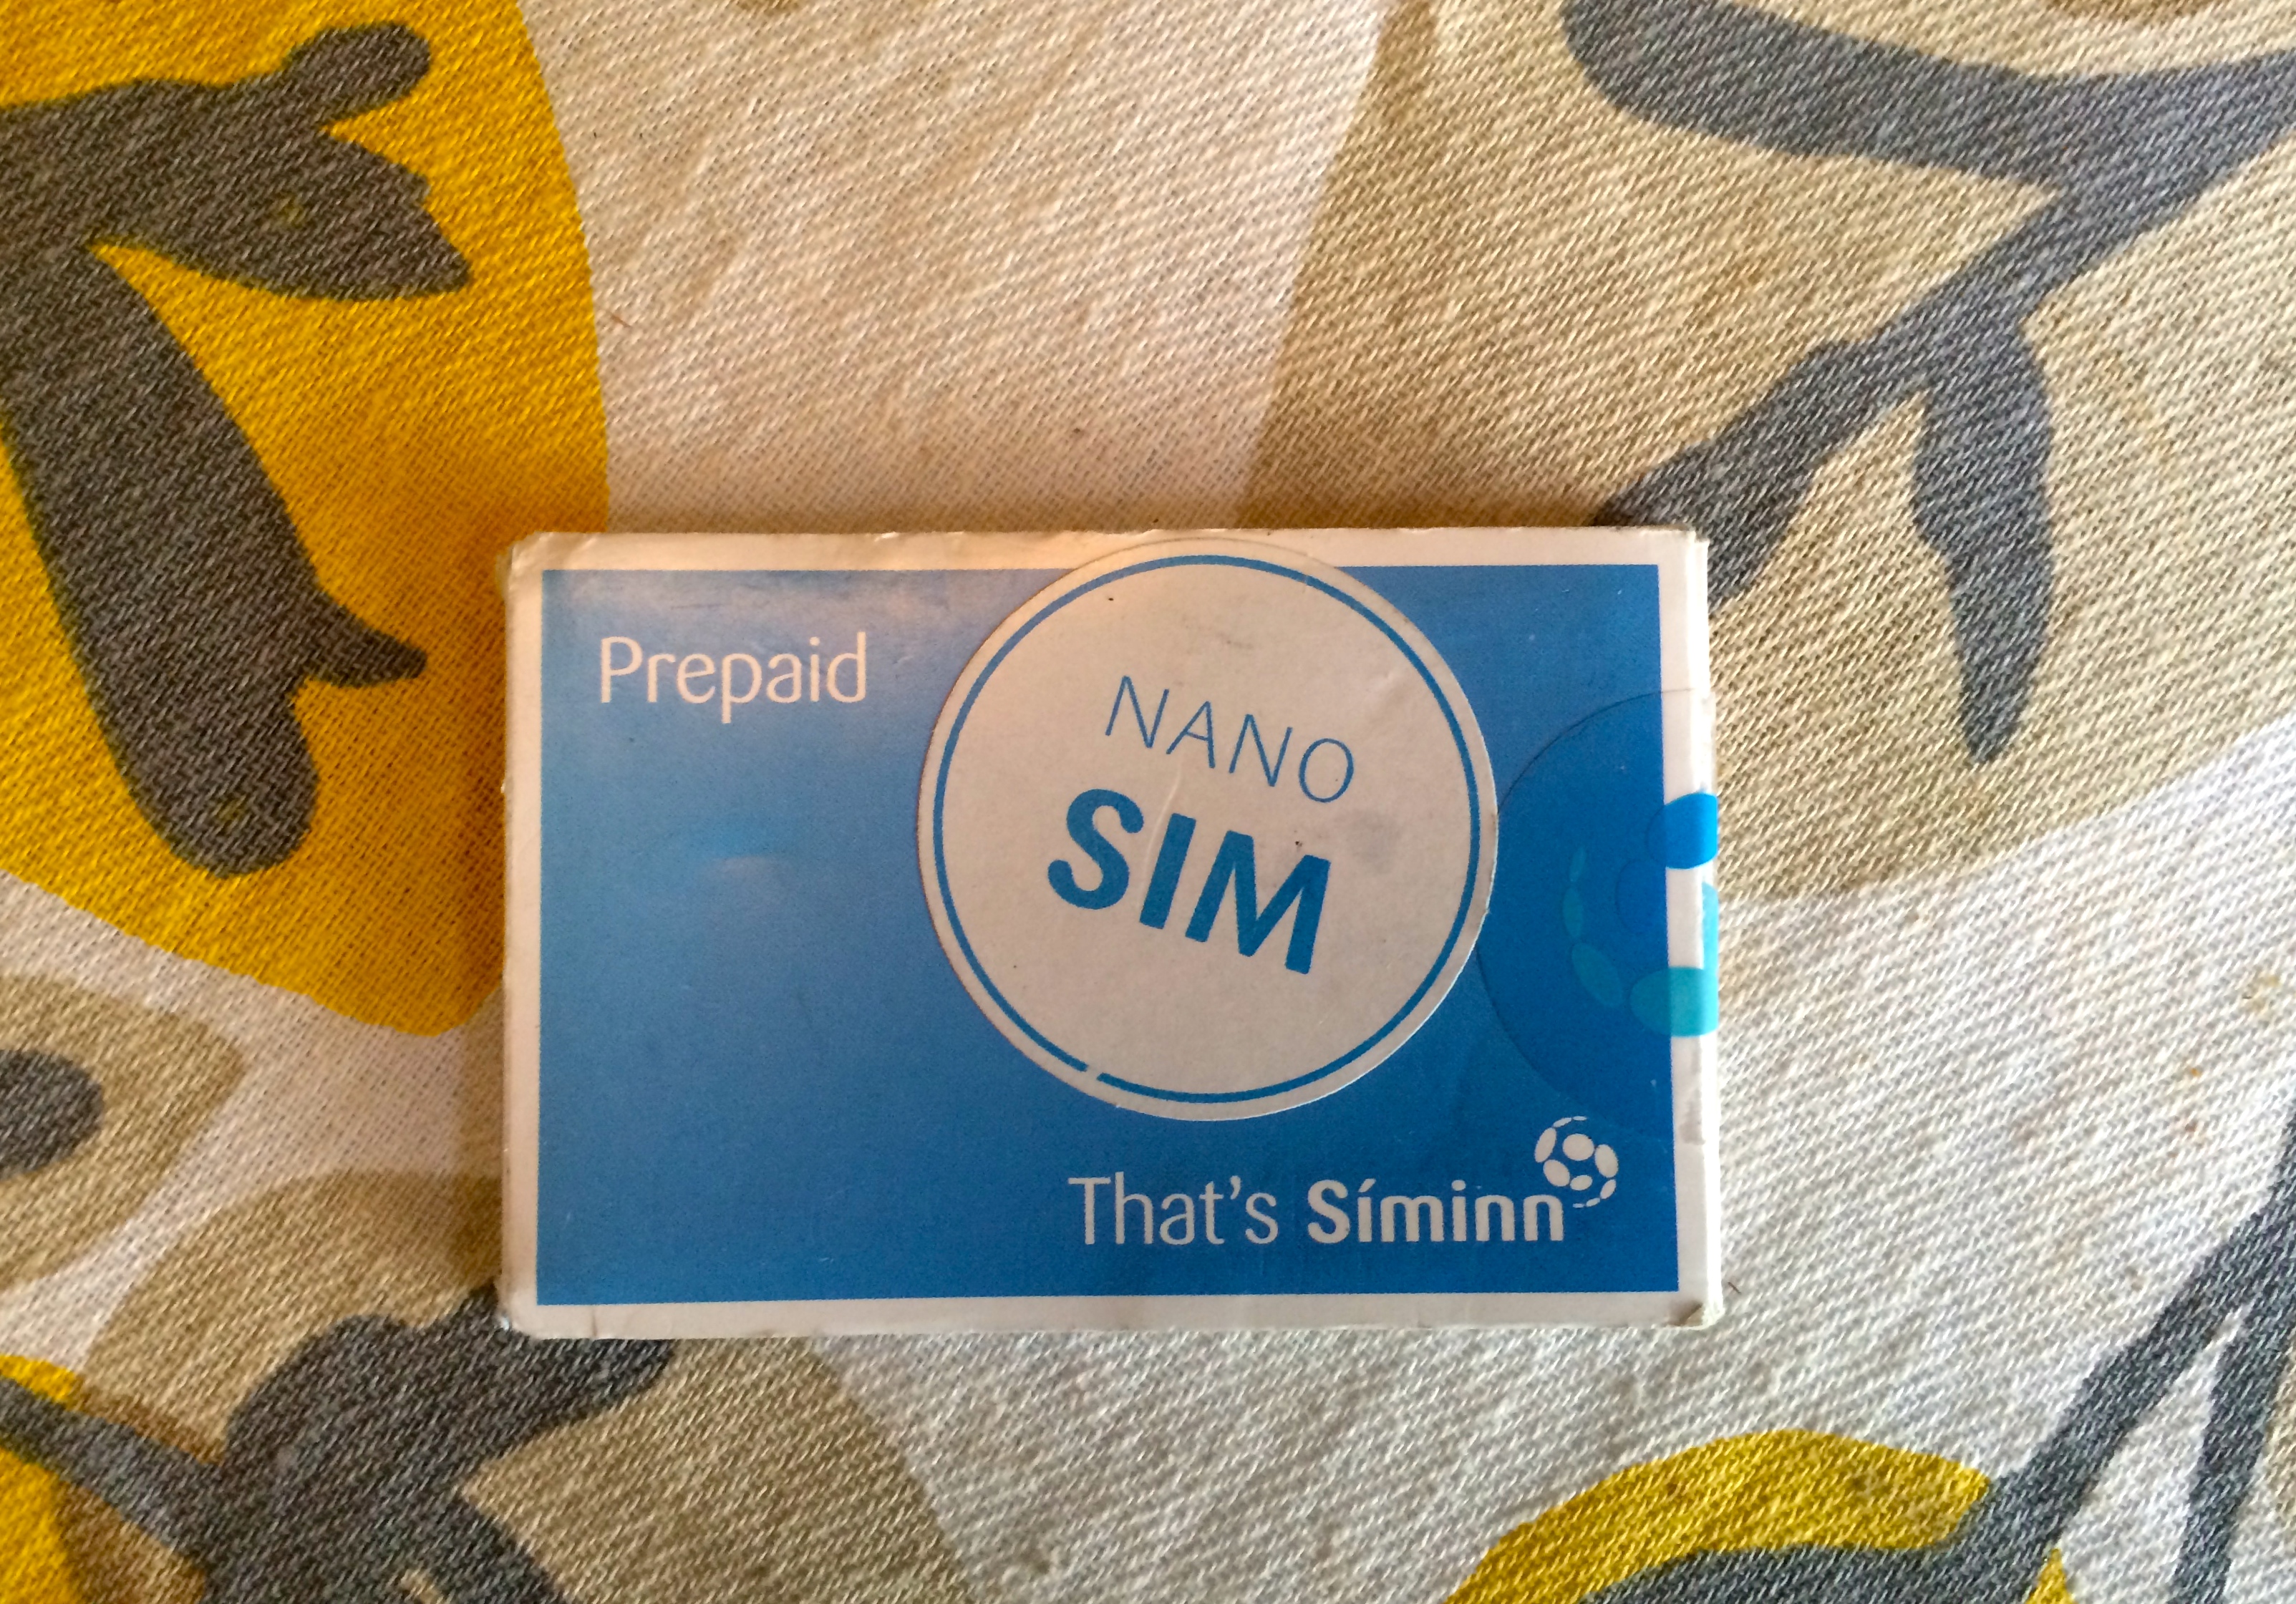  SIM card SIMINN Сотовые операторы, покупка сим-карты в Исландии